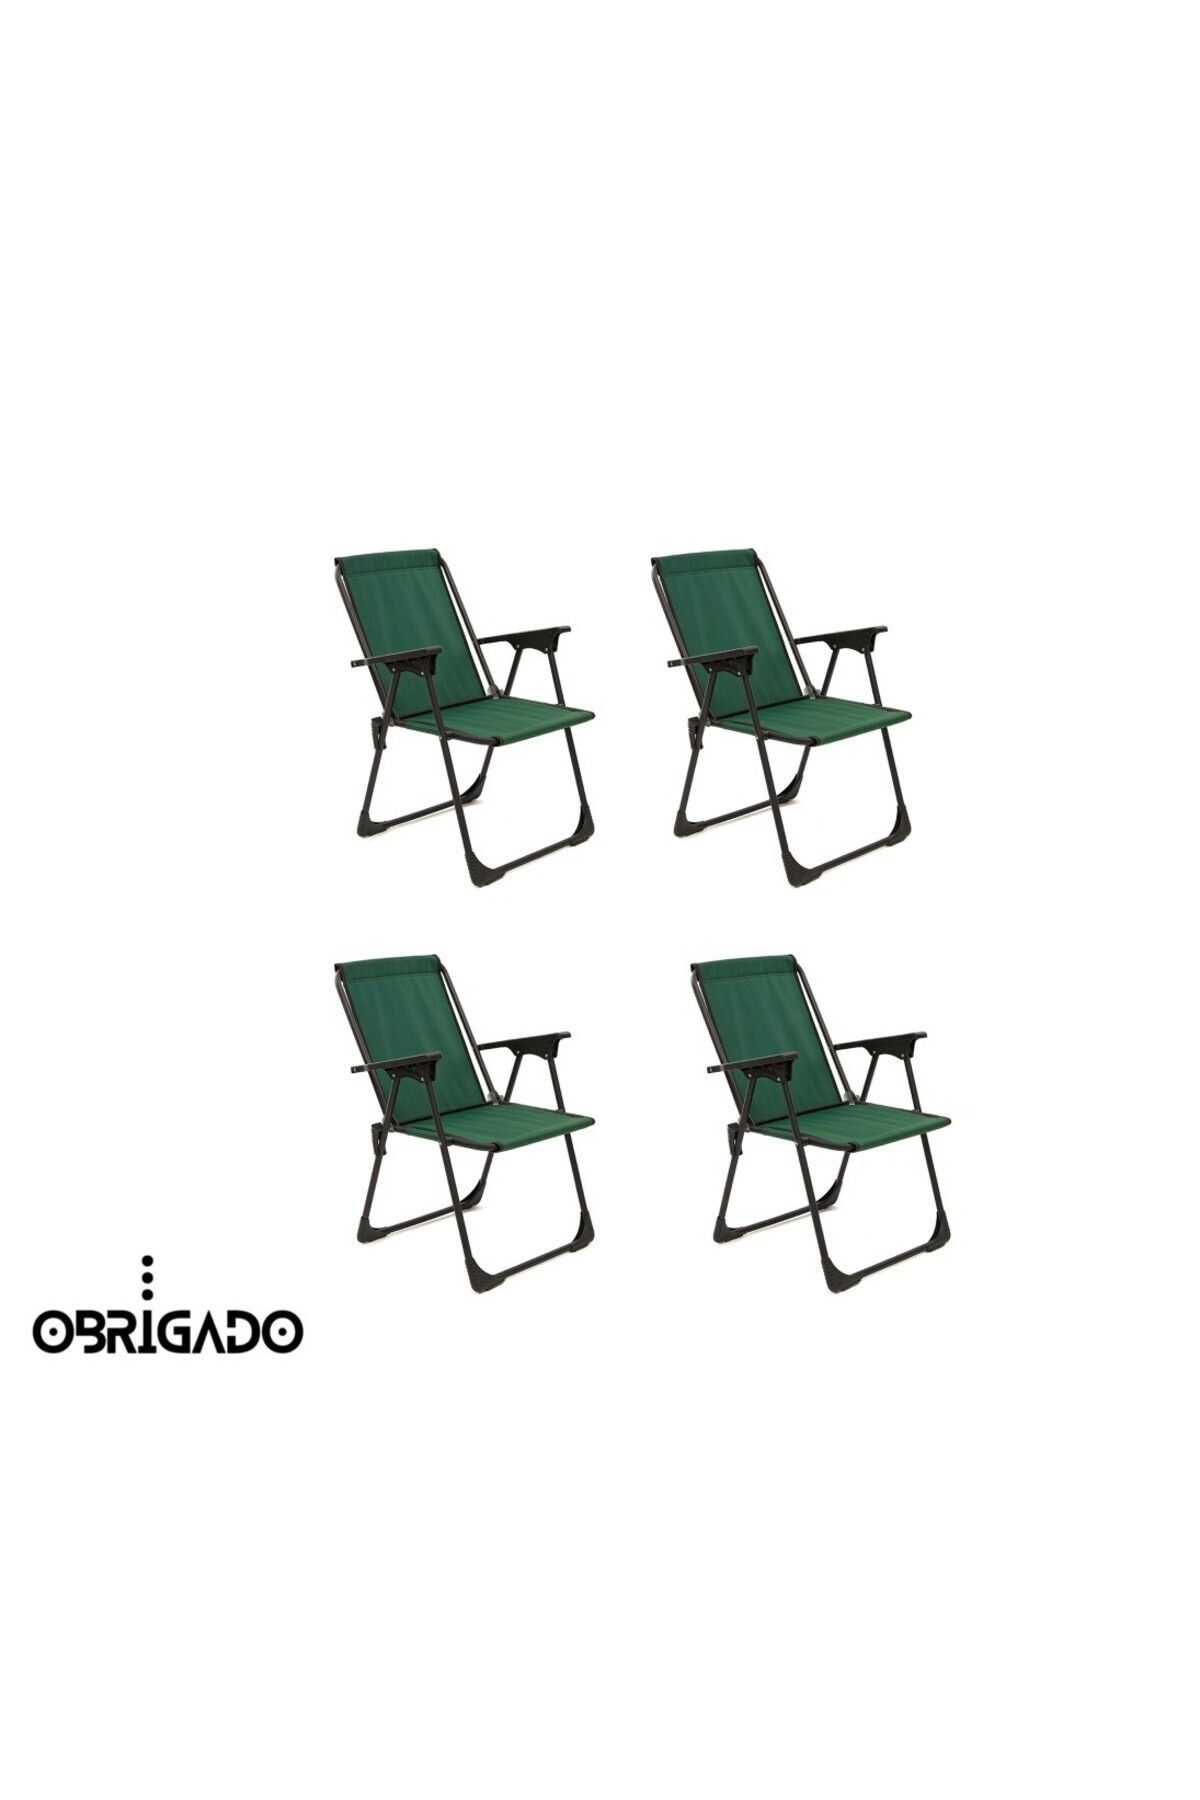 obrigado 4 Adet (DÖRTLÜ) Kamp Piknik Bahçe Plaj Dayanıklı Lüks Kolay Taşınır Ergonomik Katlanır Sandalye